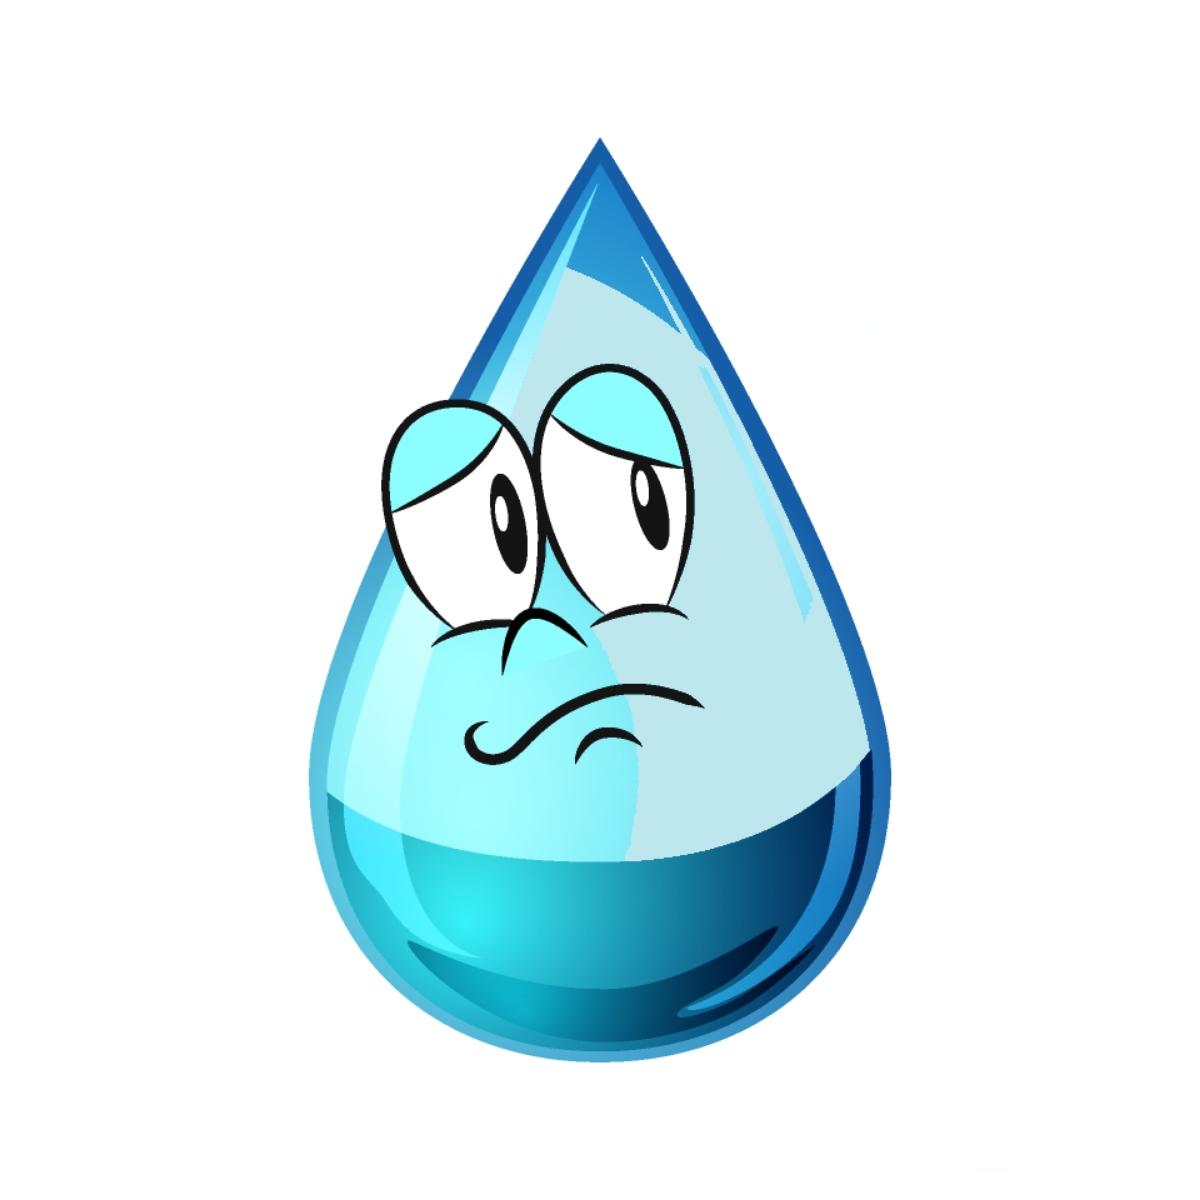 Symptoms of Dehydration Headaches